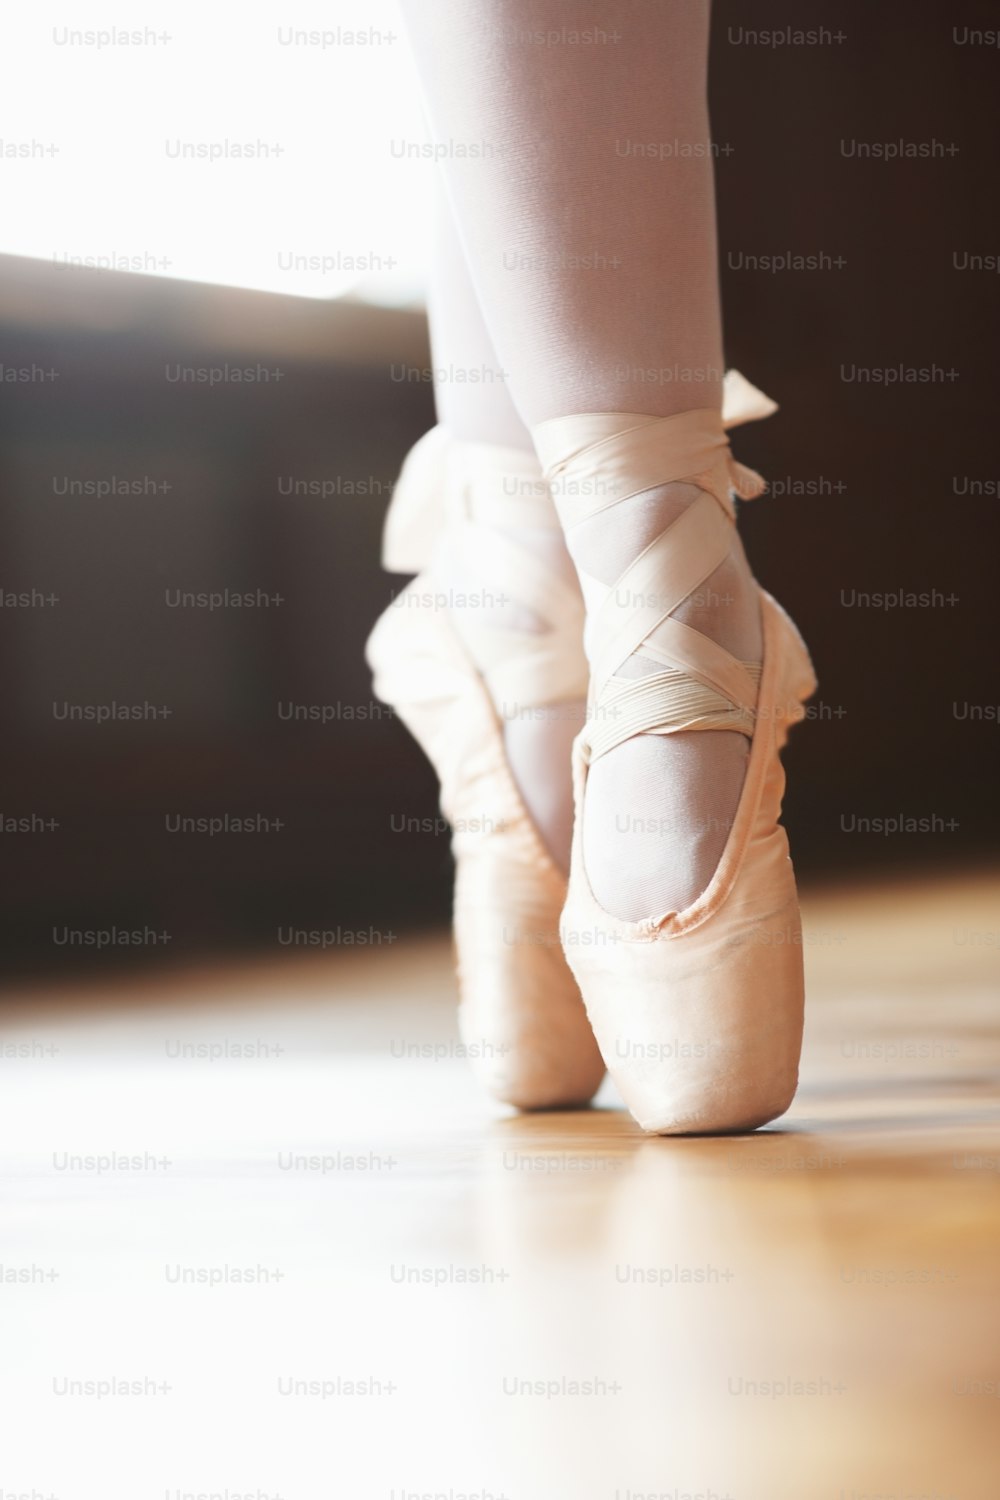 um close up dos pés de uma pessoa usando sapatos de balé